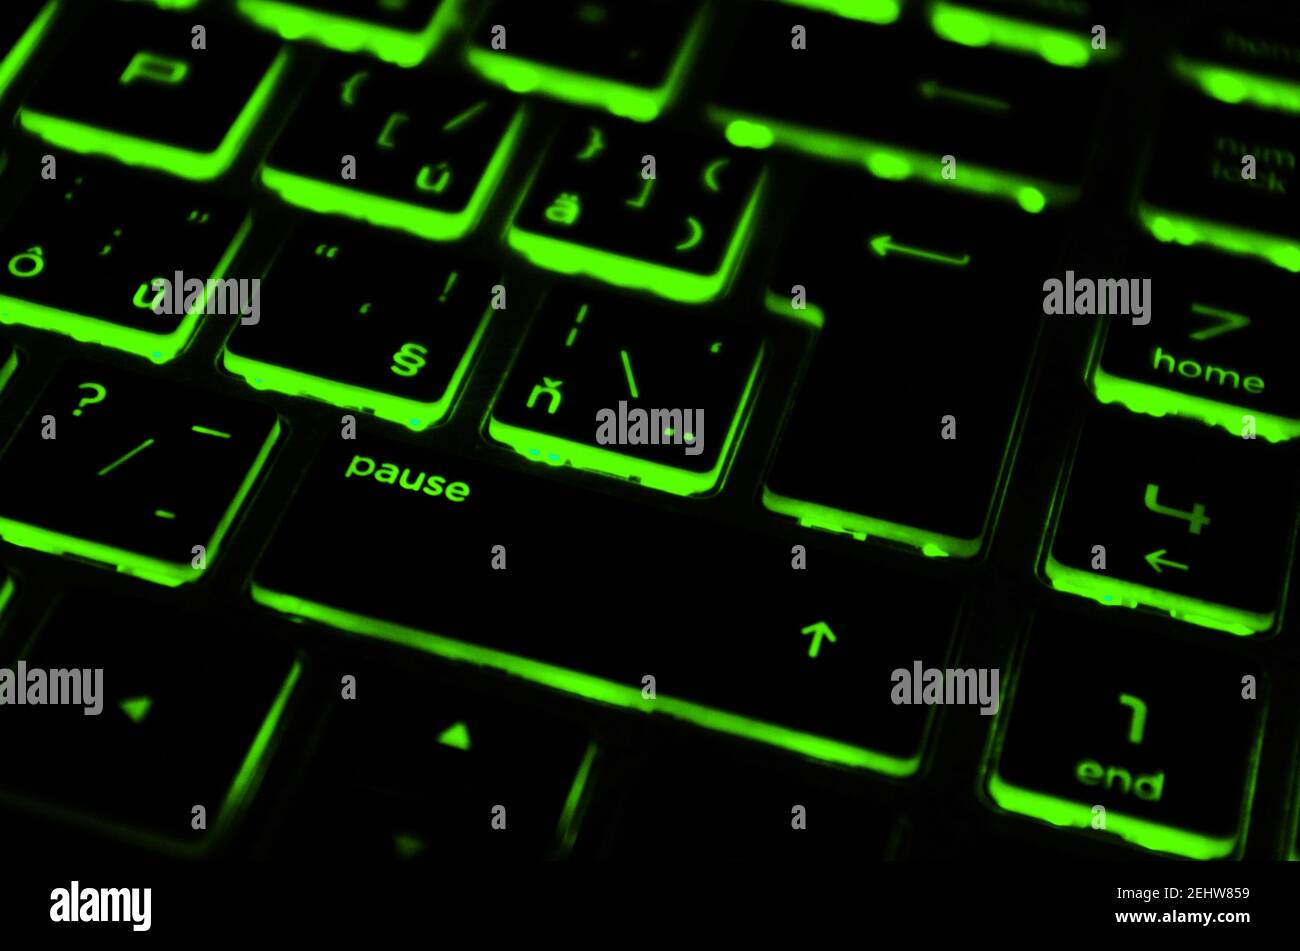 Moderne, grün beleuchtete Tastatur mit Hintergrundbeleuchtung. Grüne  Hintergrundbeleuchtung, Hintergrundbeleuchtung auf Laptop oder  Keyborad-Computer von Spielen im Dunkeln. Angehaltenes Spielkonzept  Stockfotografie - Alamy